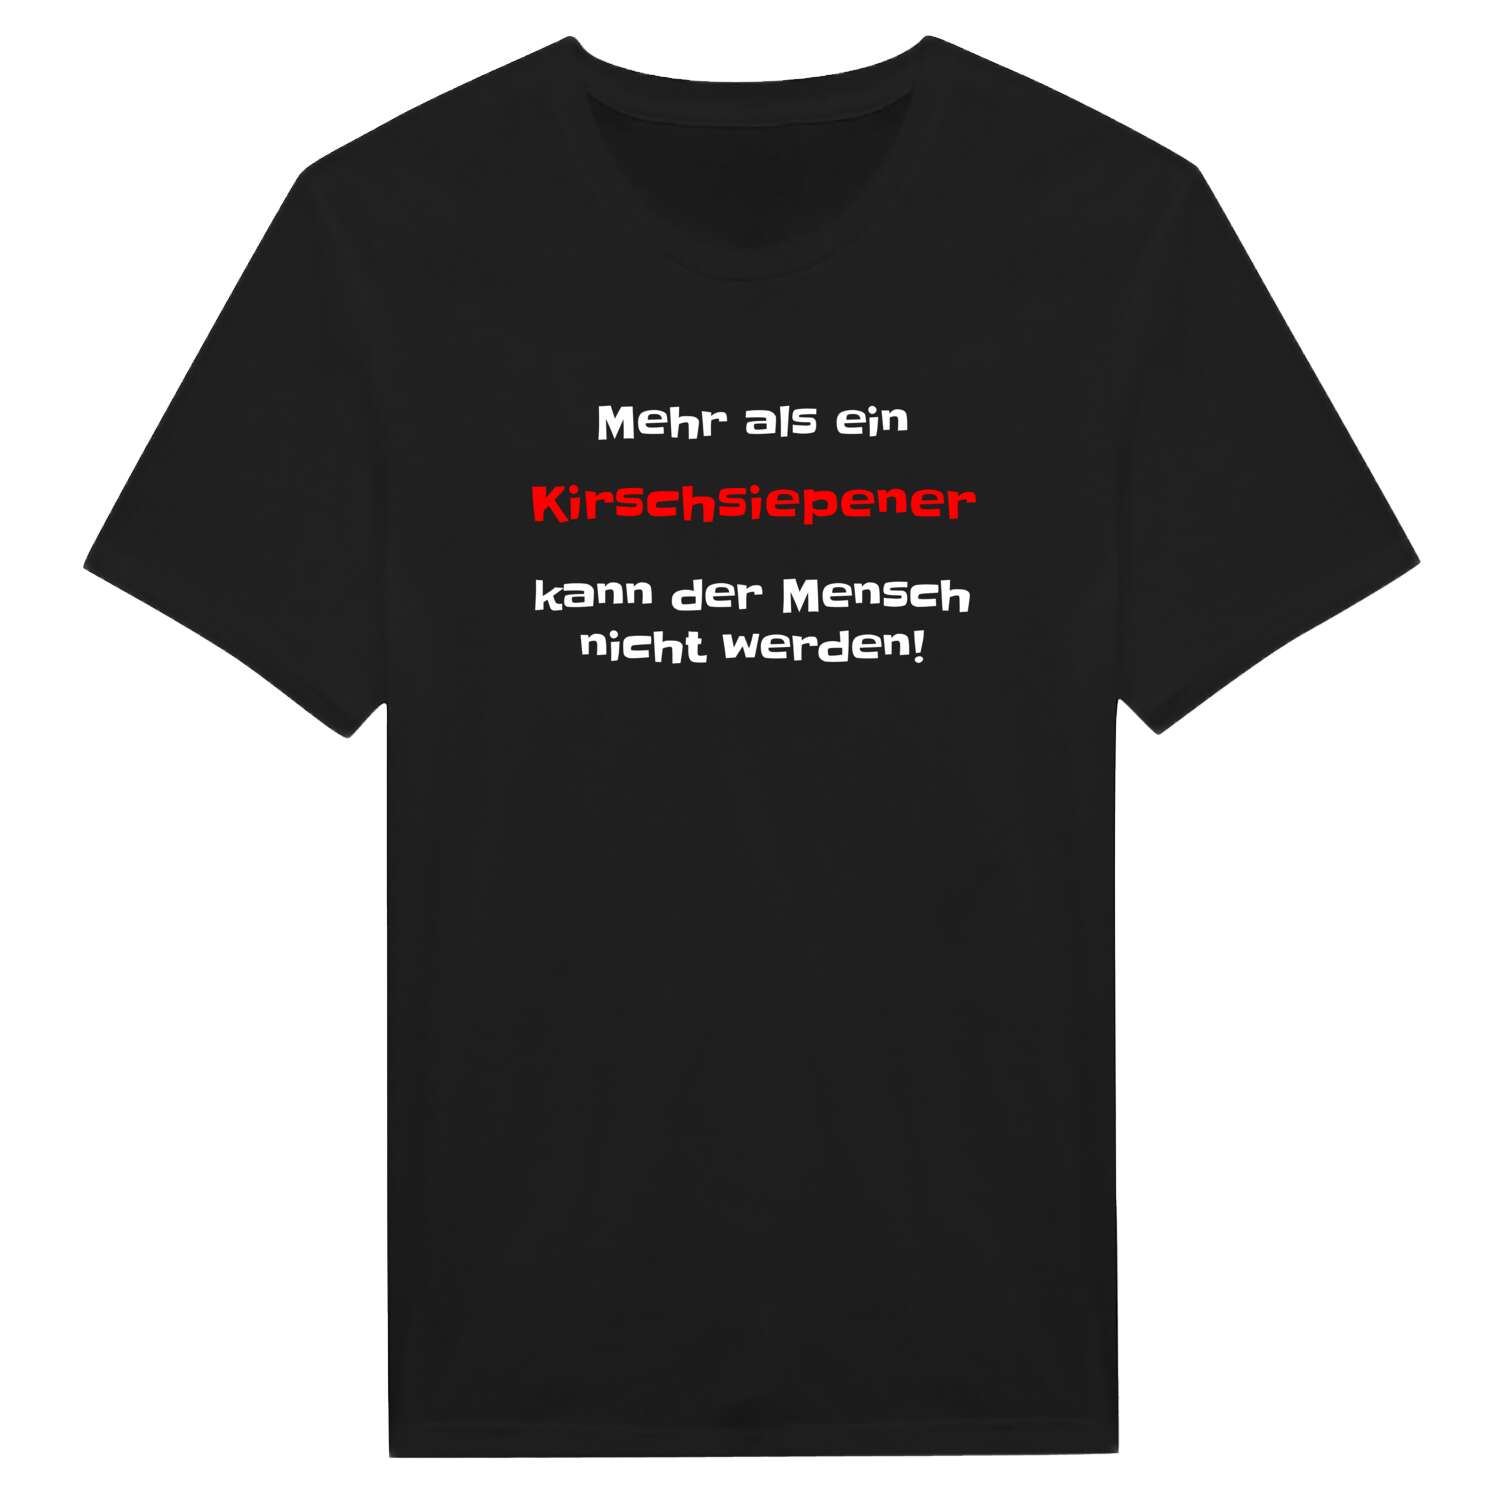 Kirschsiepen T-Shirt »Mehr als ein«